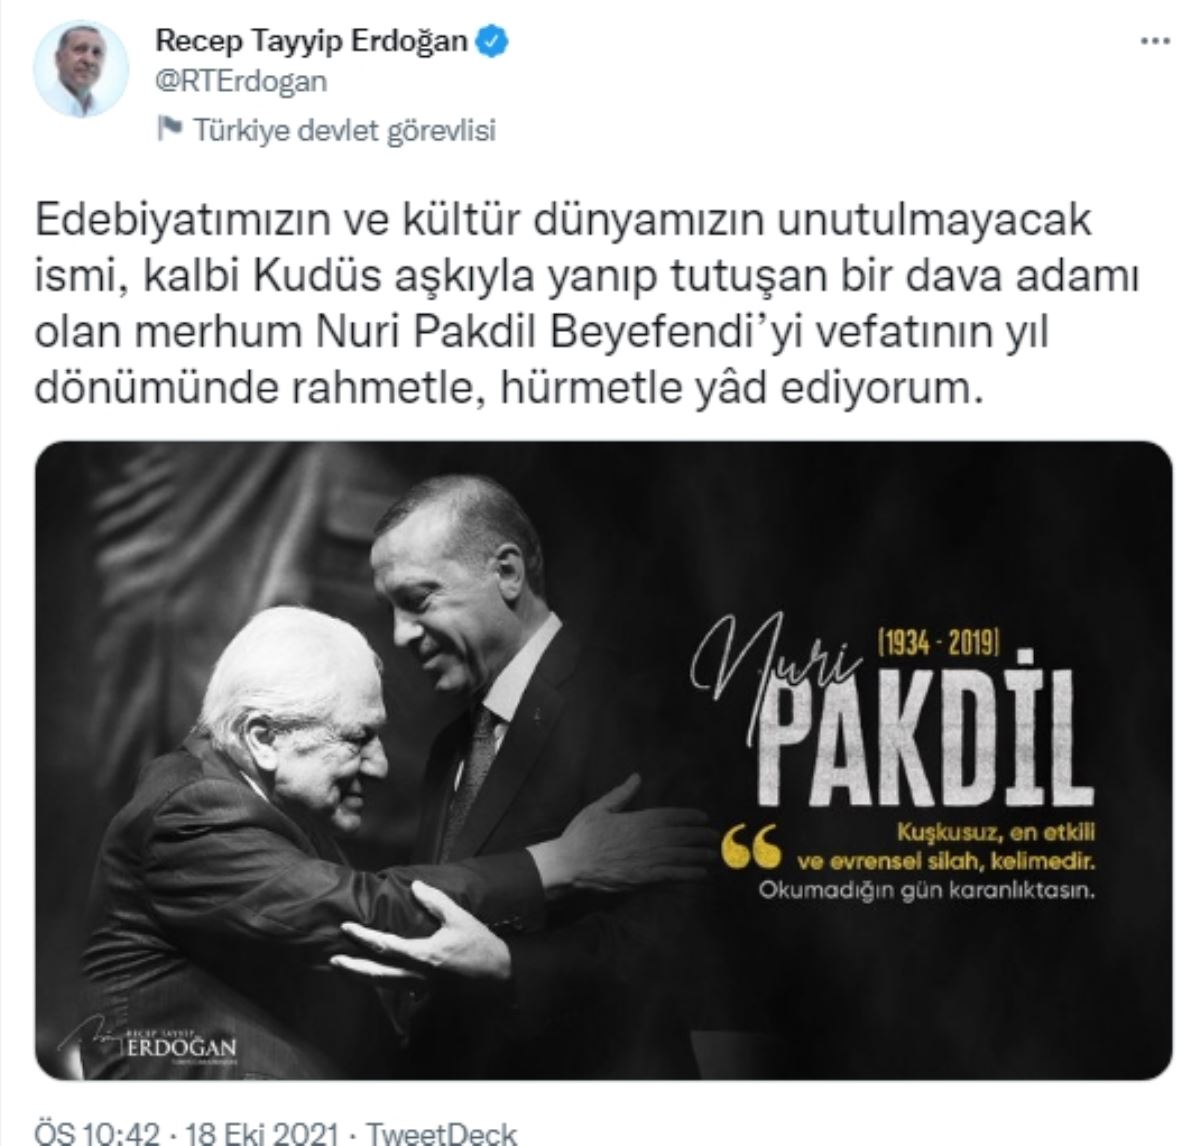 Erdoğan'dan Atatürk'e 'firavun' diyen Pakdil için anma mesajı!